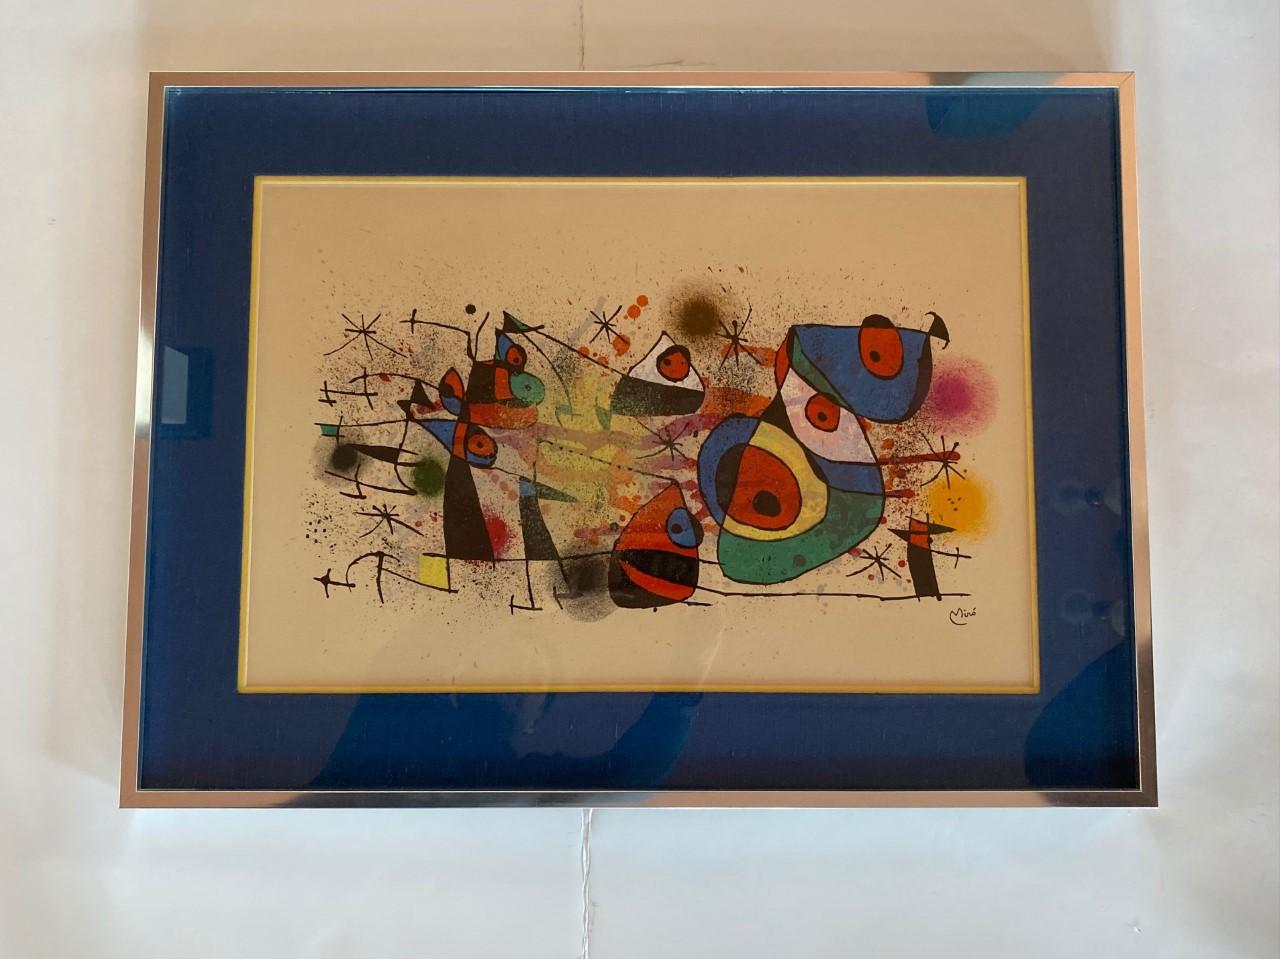 Joan Miró, Ceramiques, est une lithographie originale réalisée en 1974.  Une signature imprimée figure en bas à droite de l'image.  Publié et imprimé par Maeght, Paris.  M.928.
Joan Miró était largement considéré comme l'un des principaux